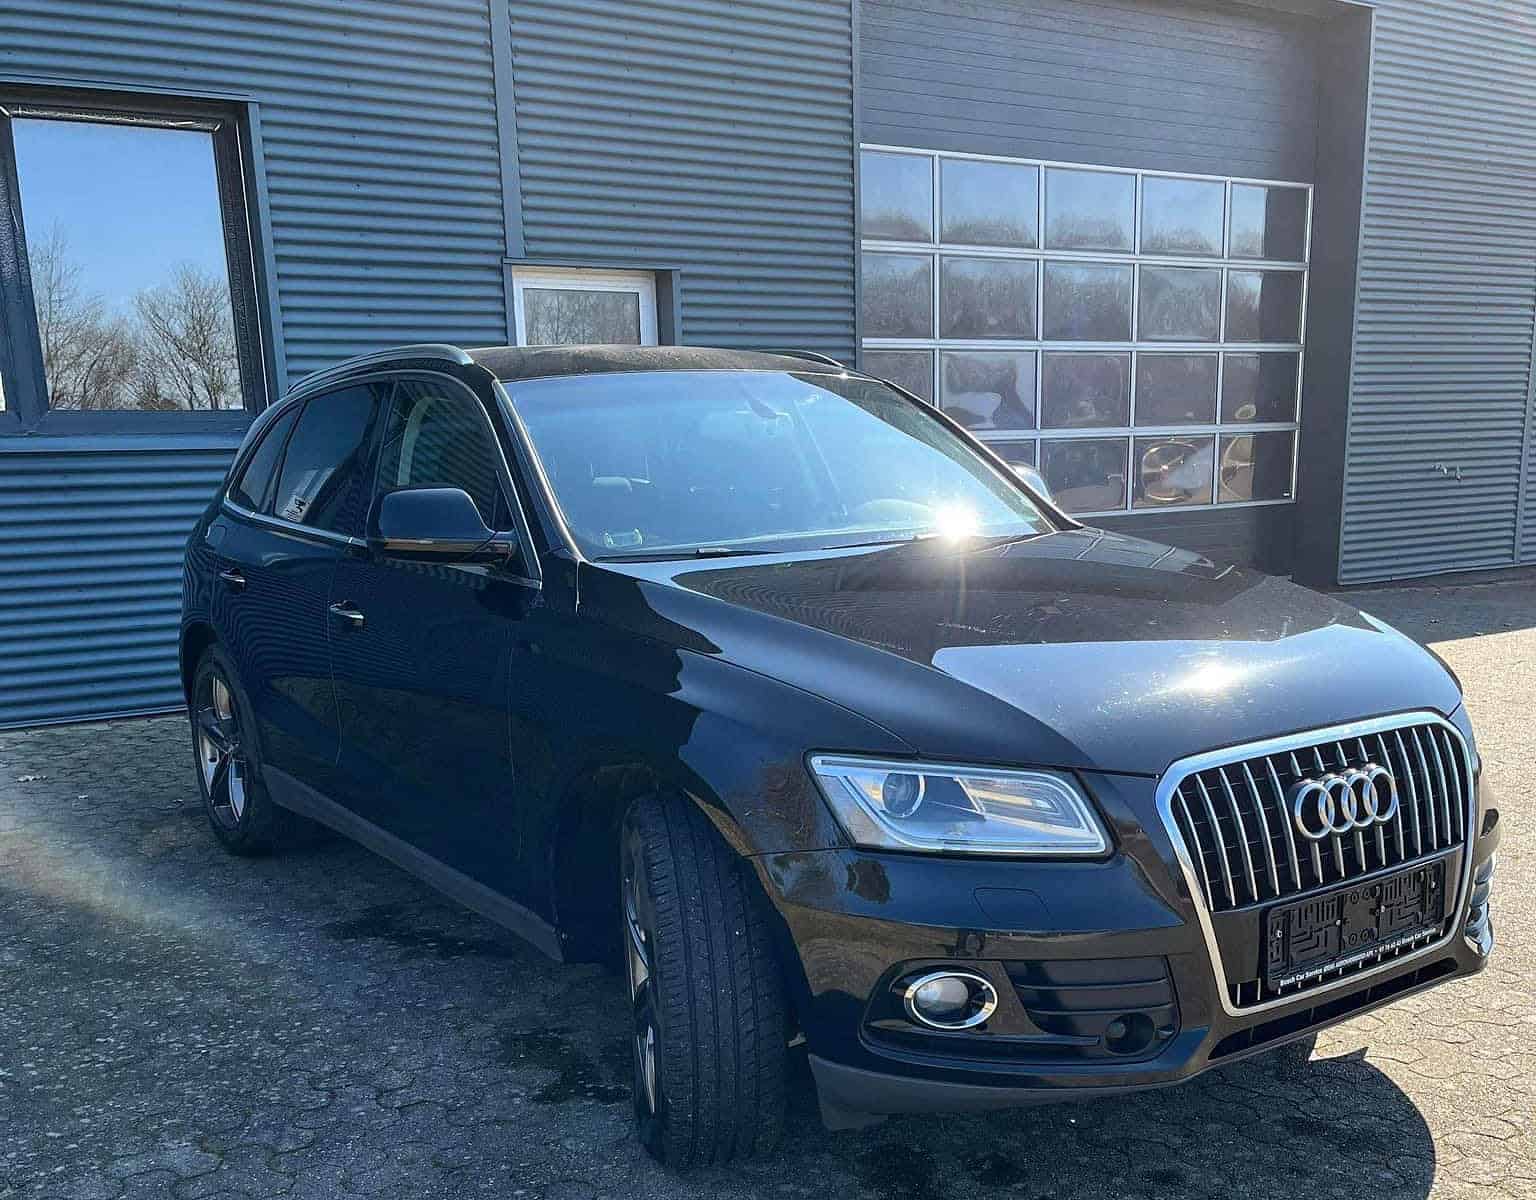 EFTERLYST: Hjælp politiet med at finde stjålne Audi- og Volkswagen-biler Audi Q5